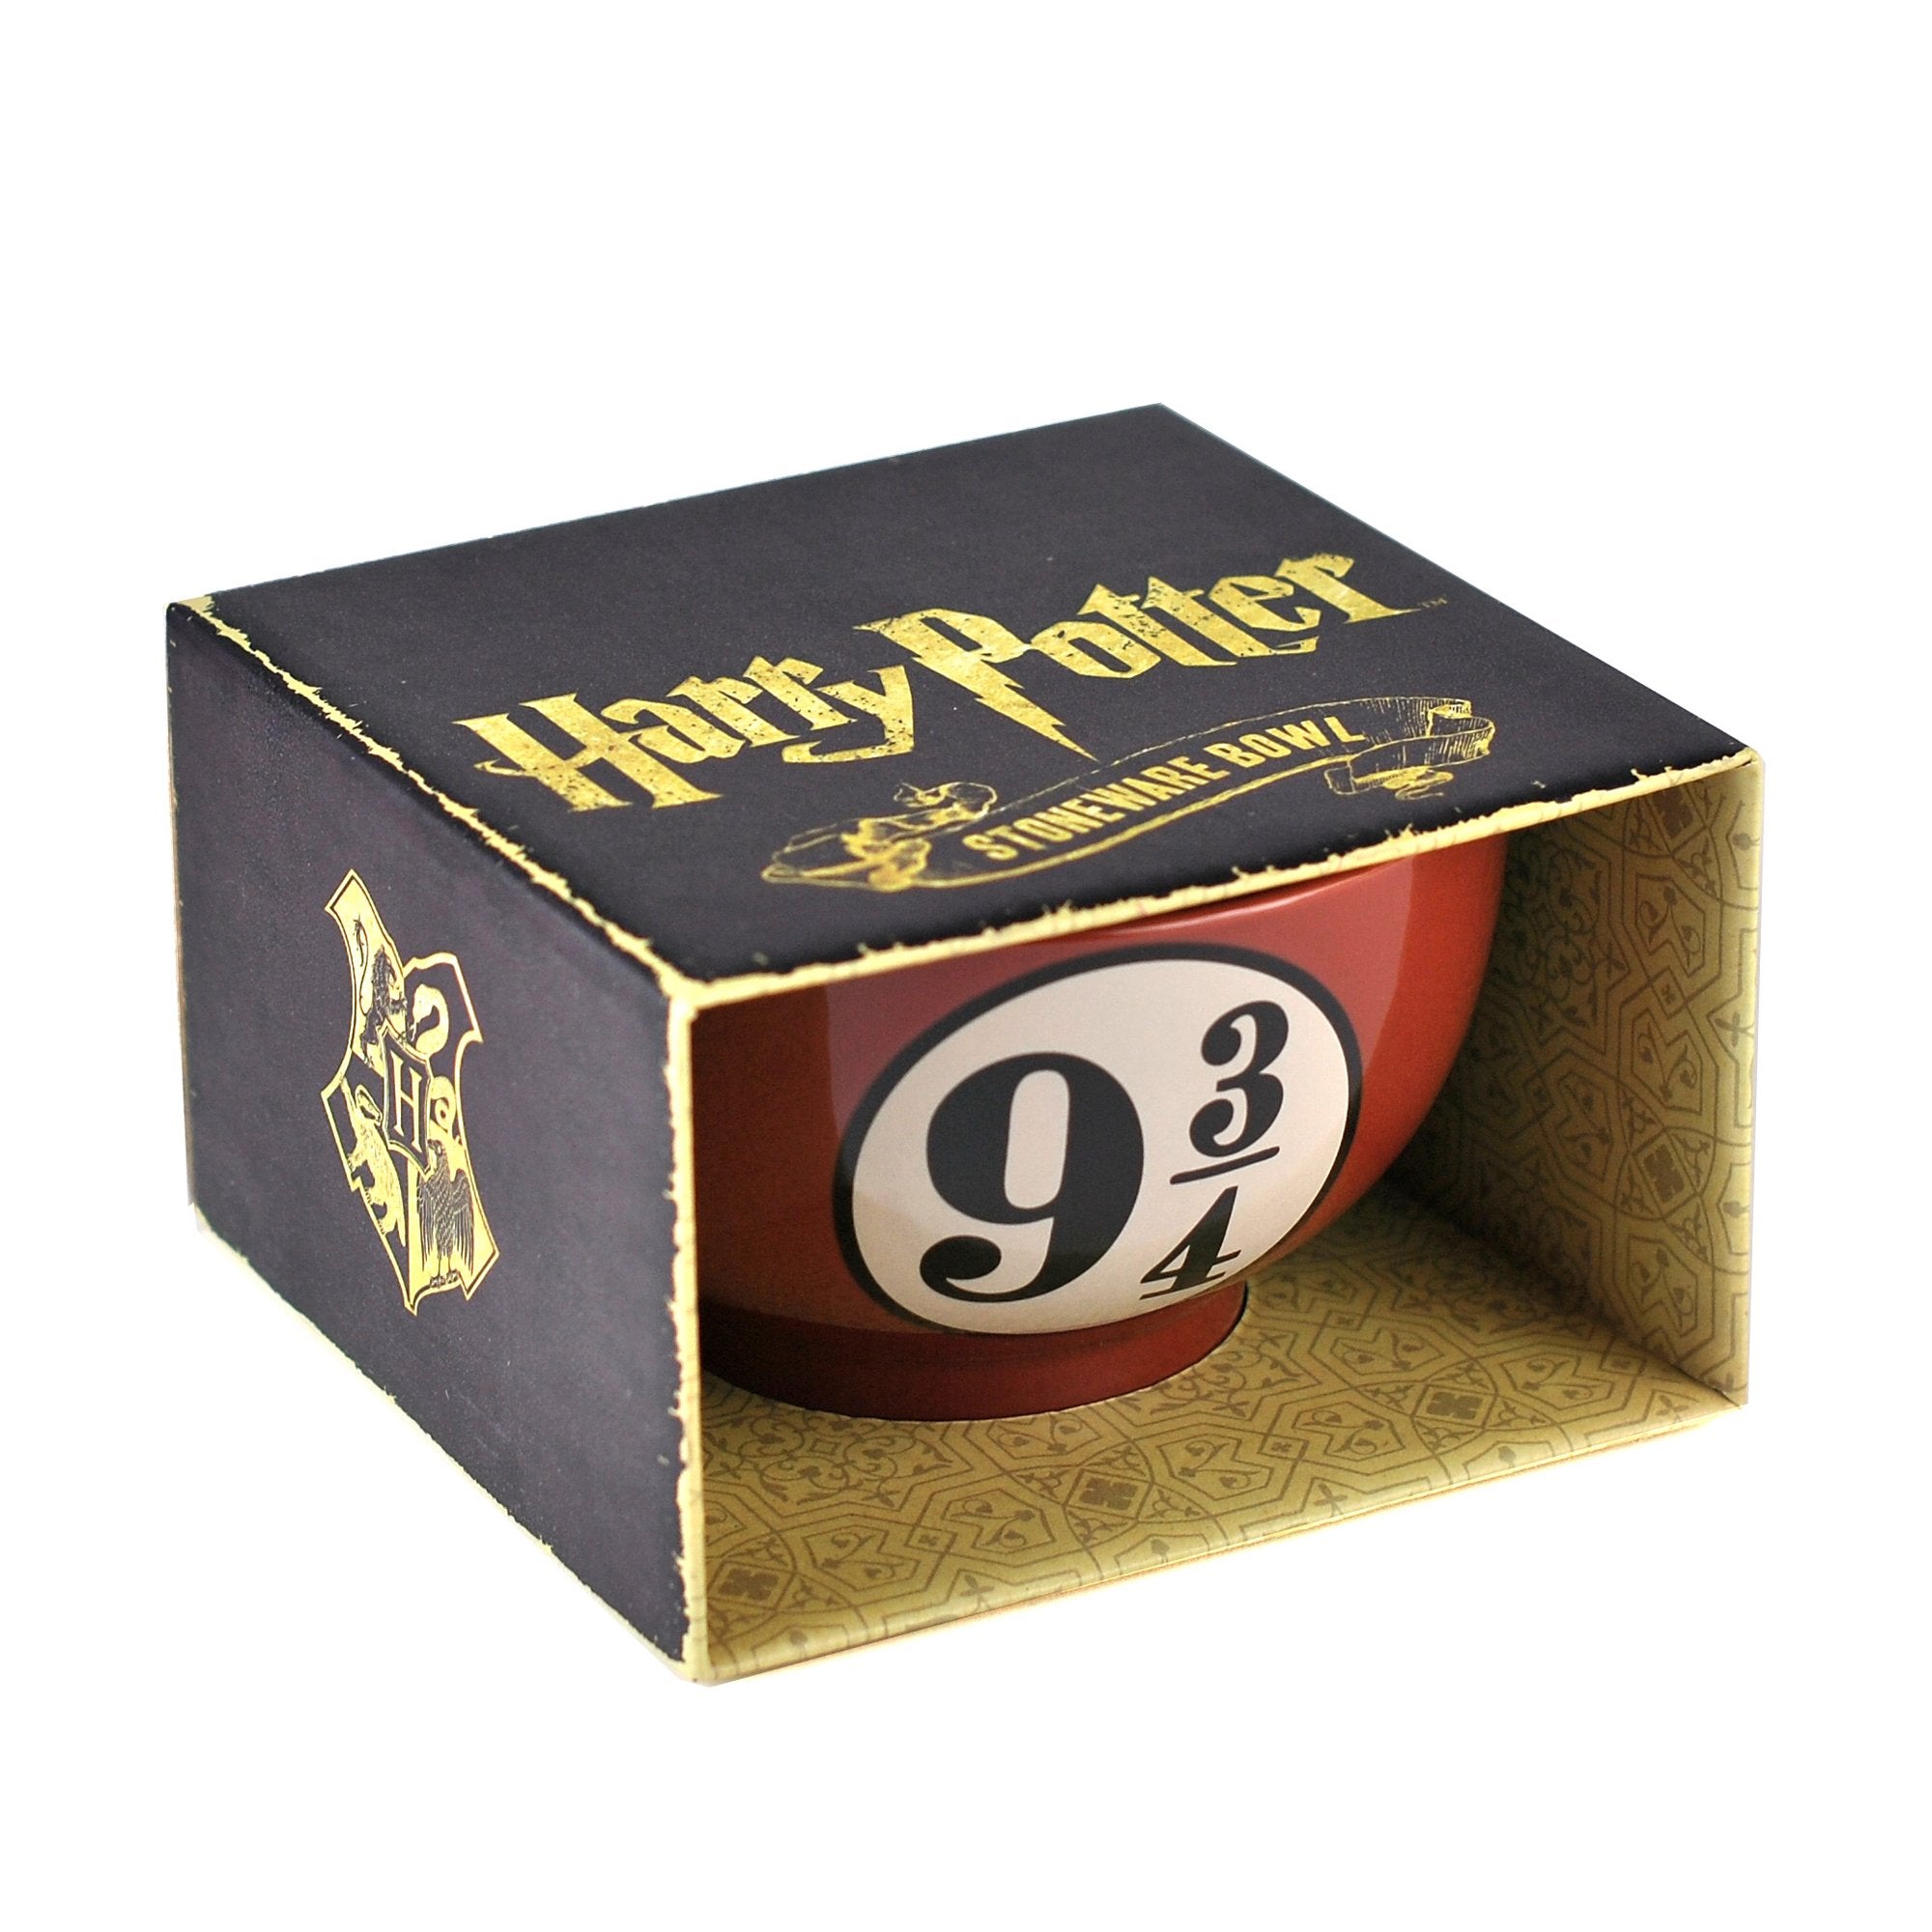 Harry Potter Bowl - Platform 9 3/4